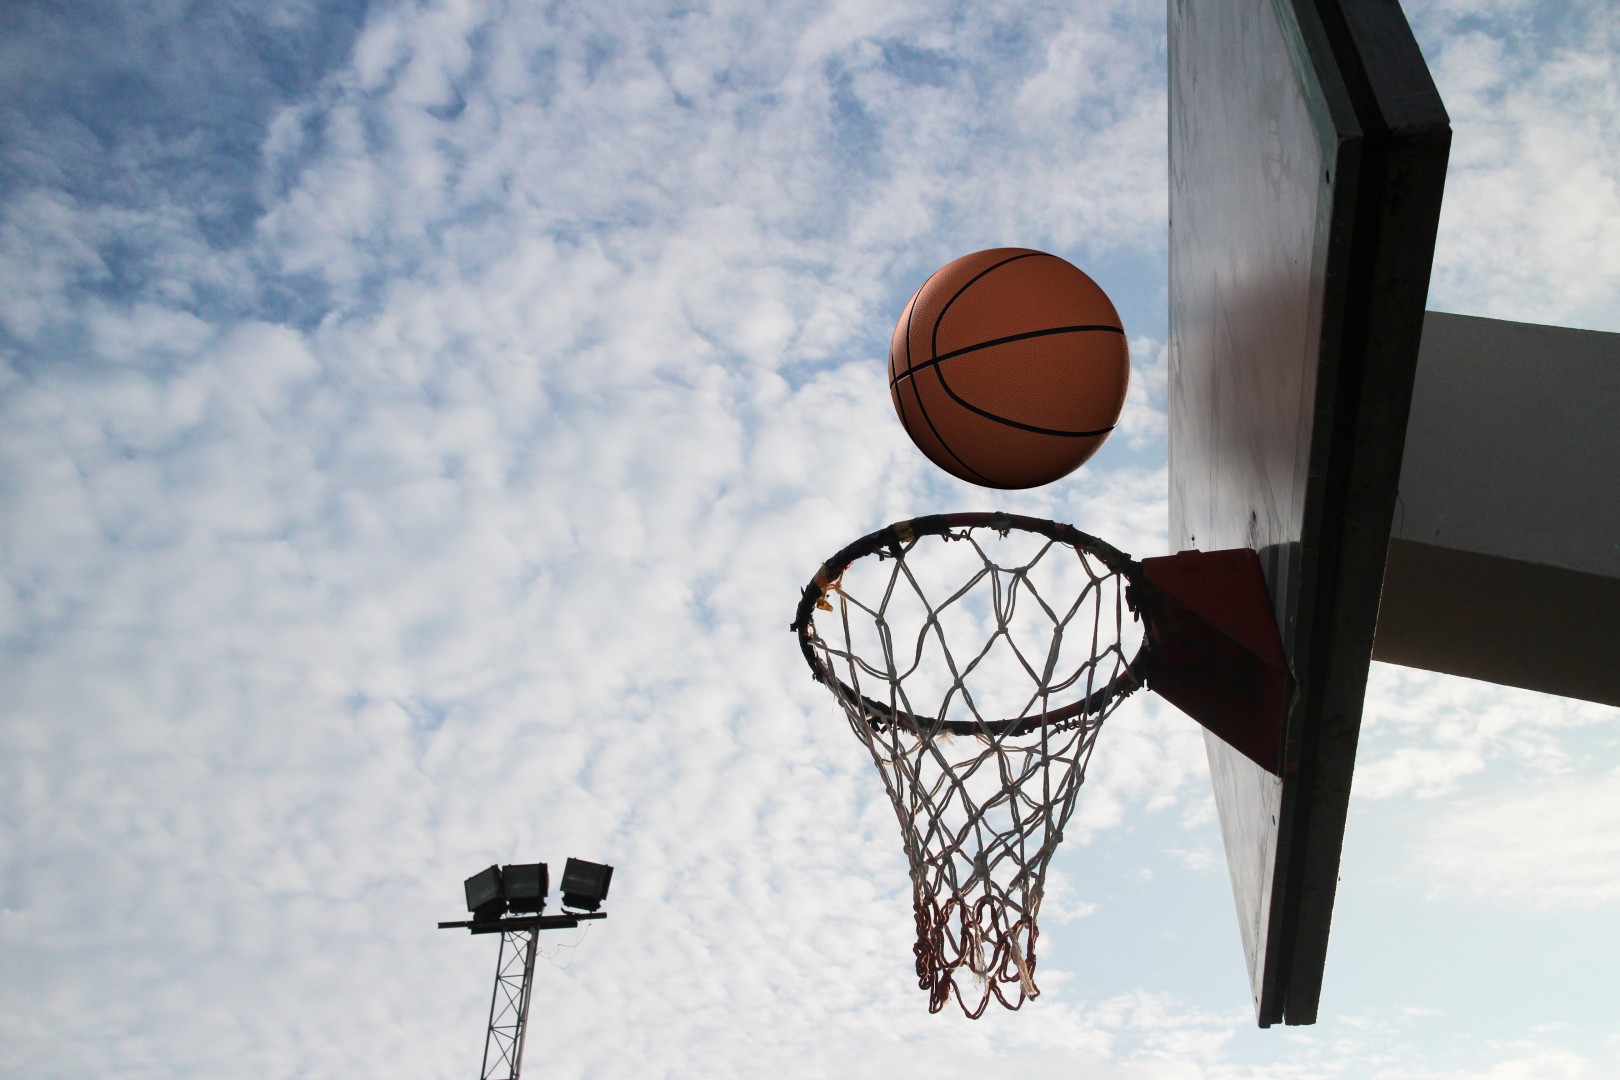 Три команды Новоазовского района стали призерами Республиканского турнира по баскетболу